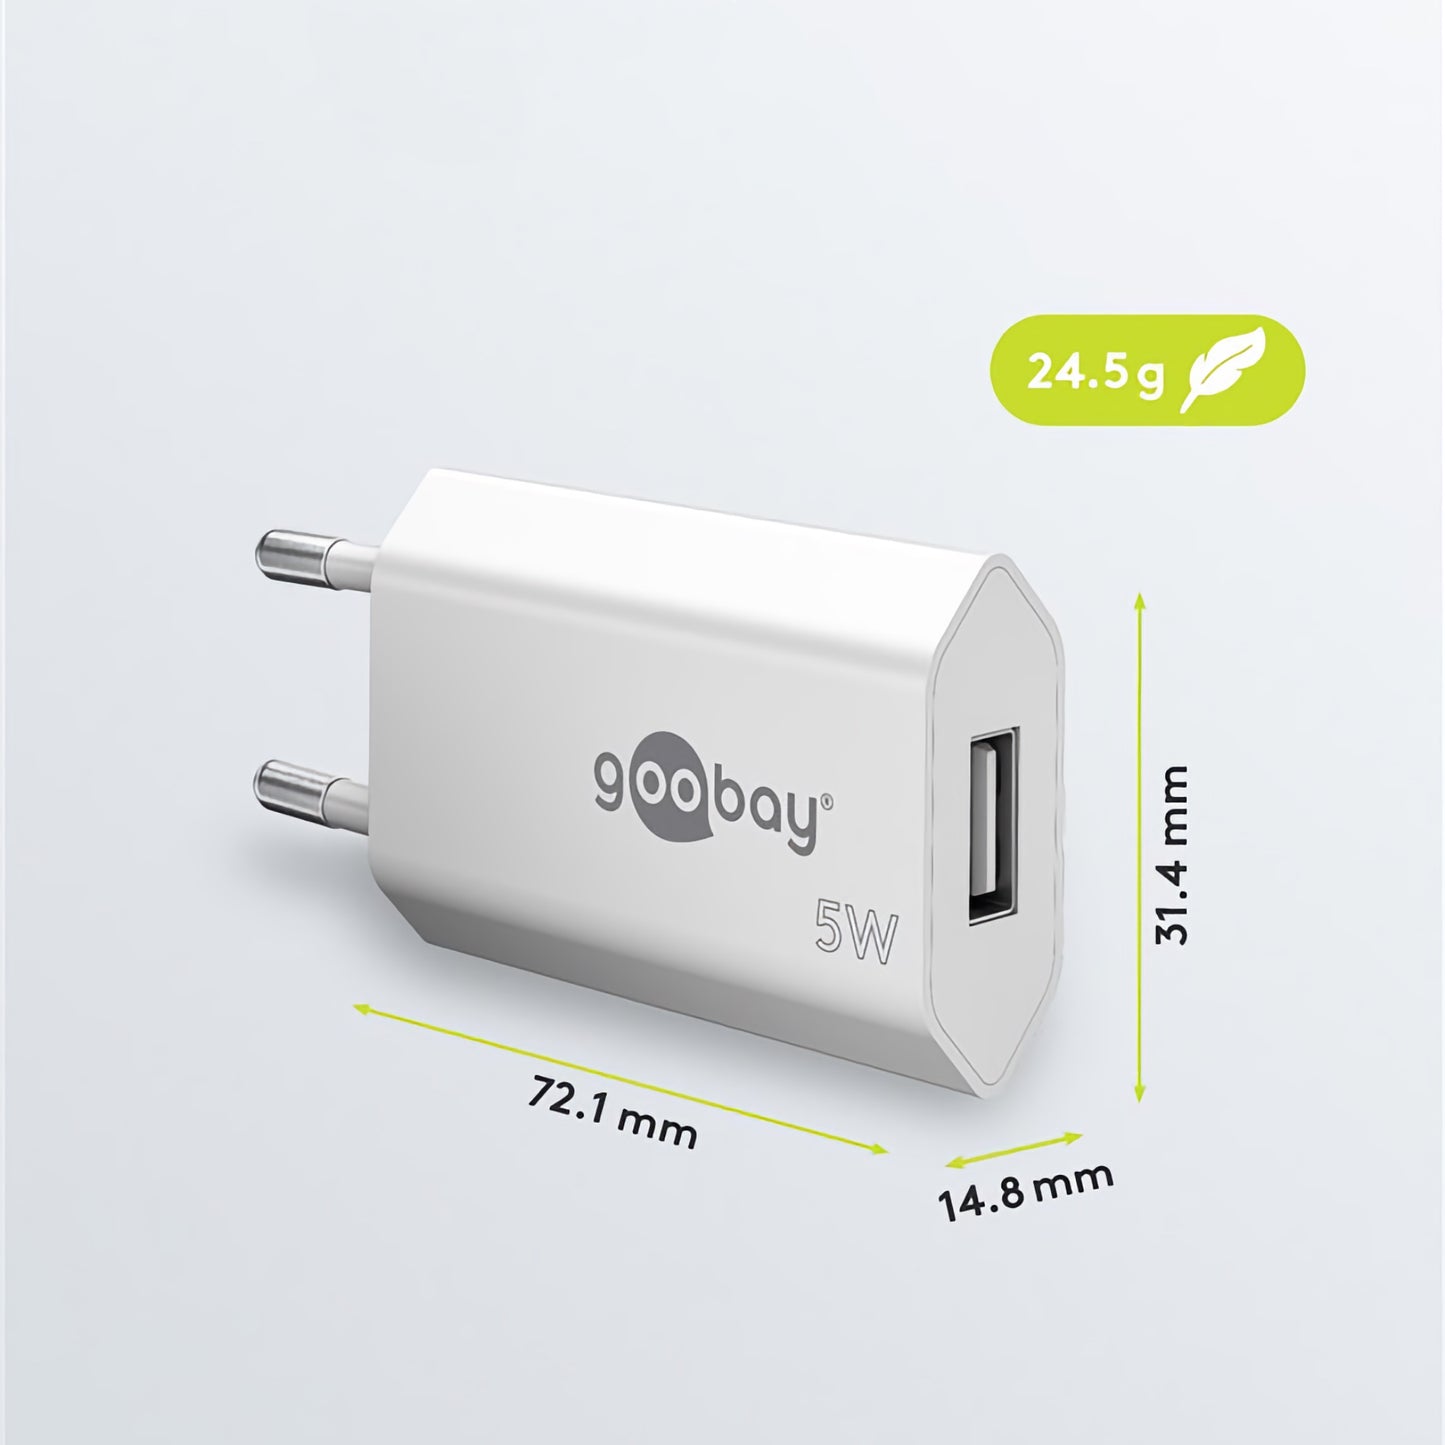 USB-Ladegerät für iPhone, Apple Watch und Smartphone 5 W